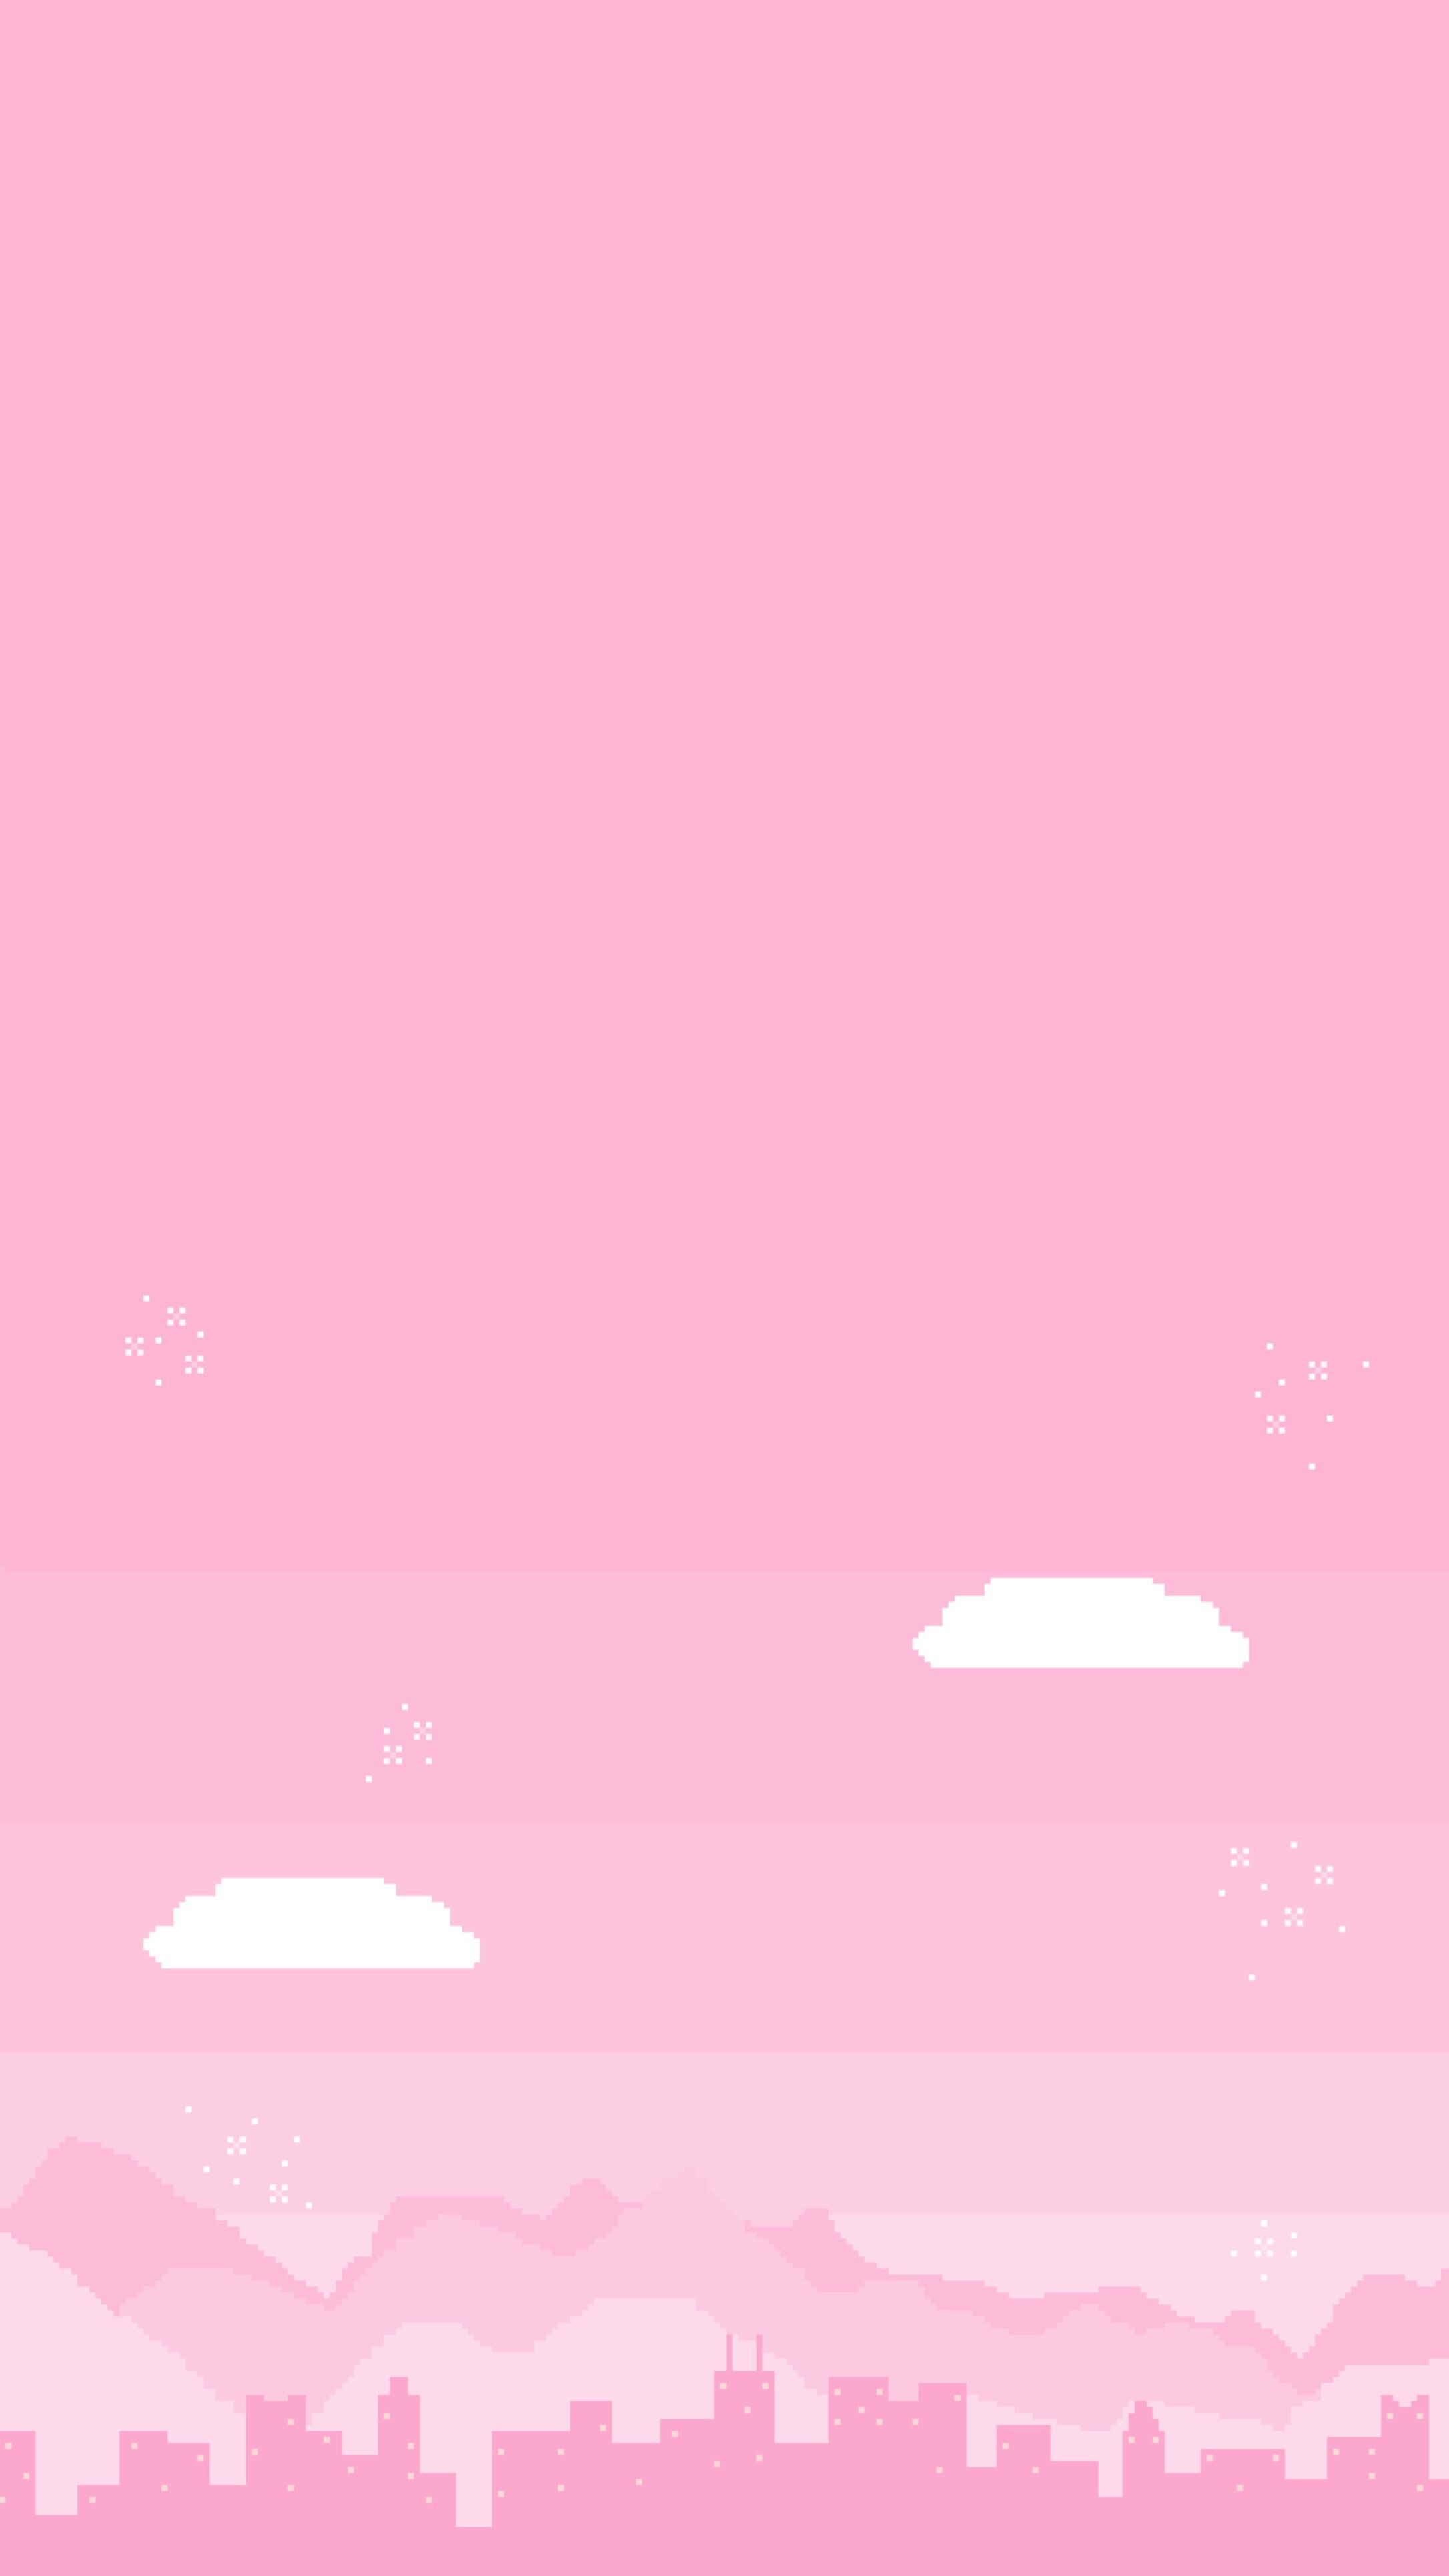 Pin di Plano de fundo paisagem rosa